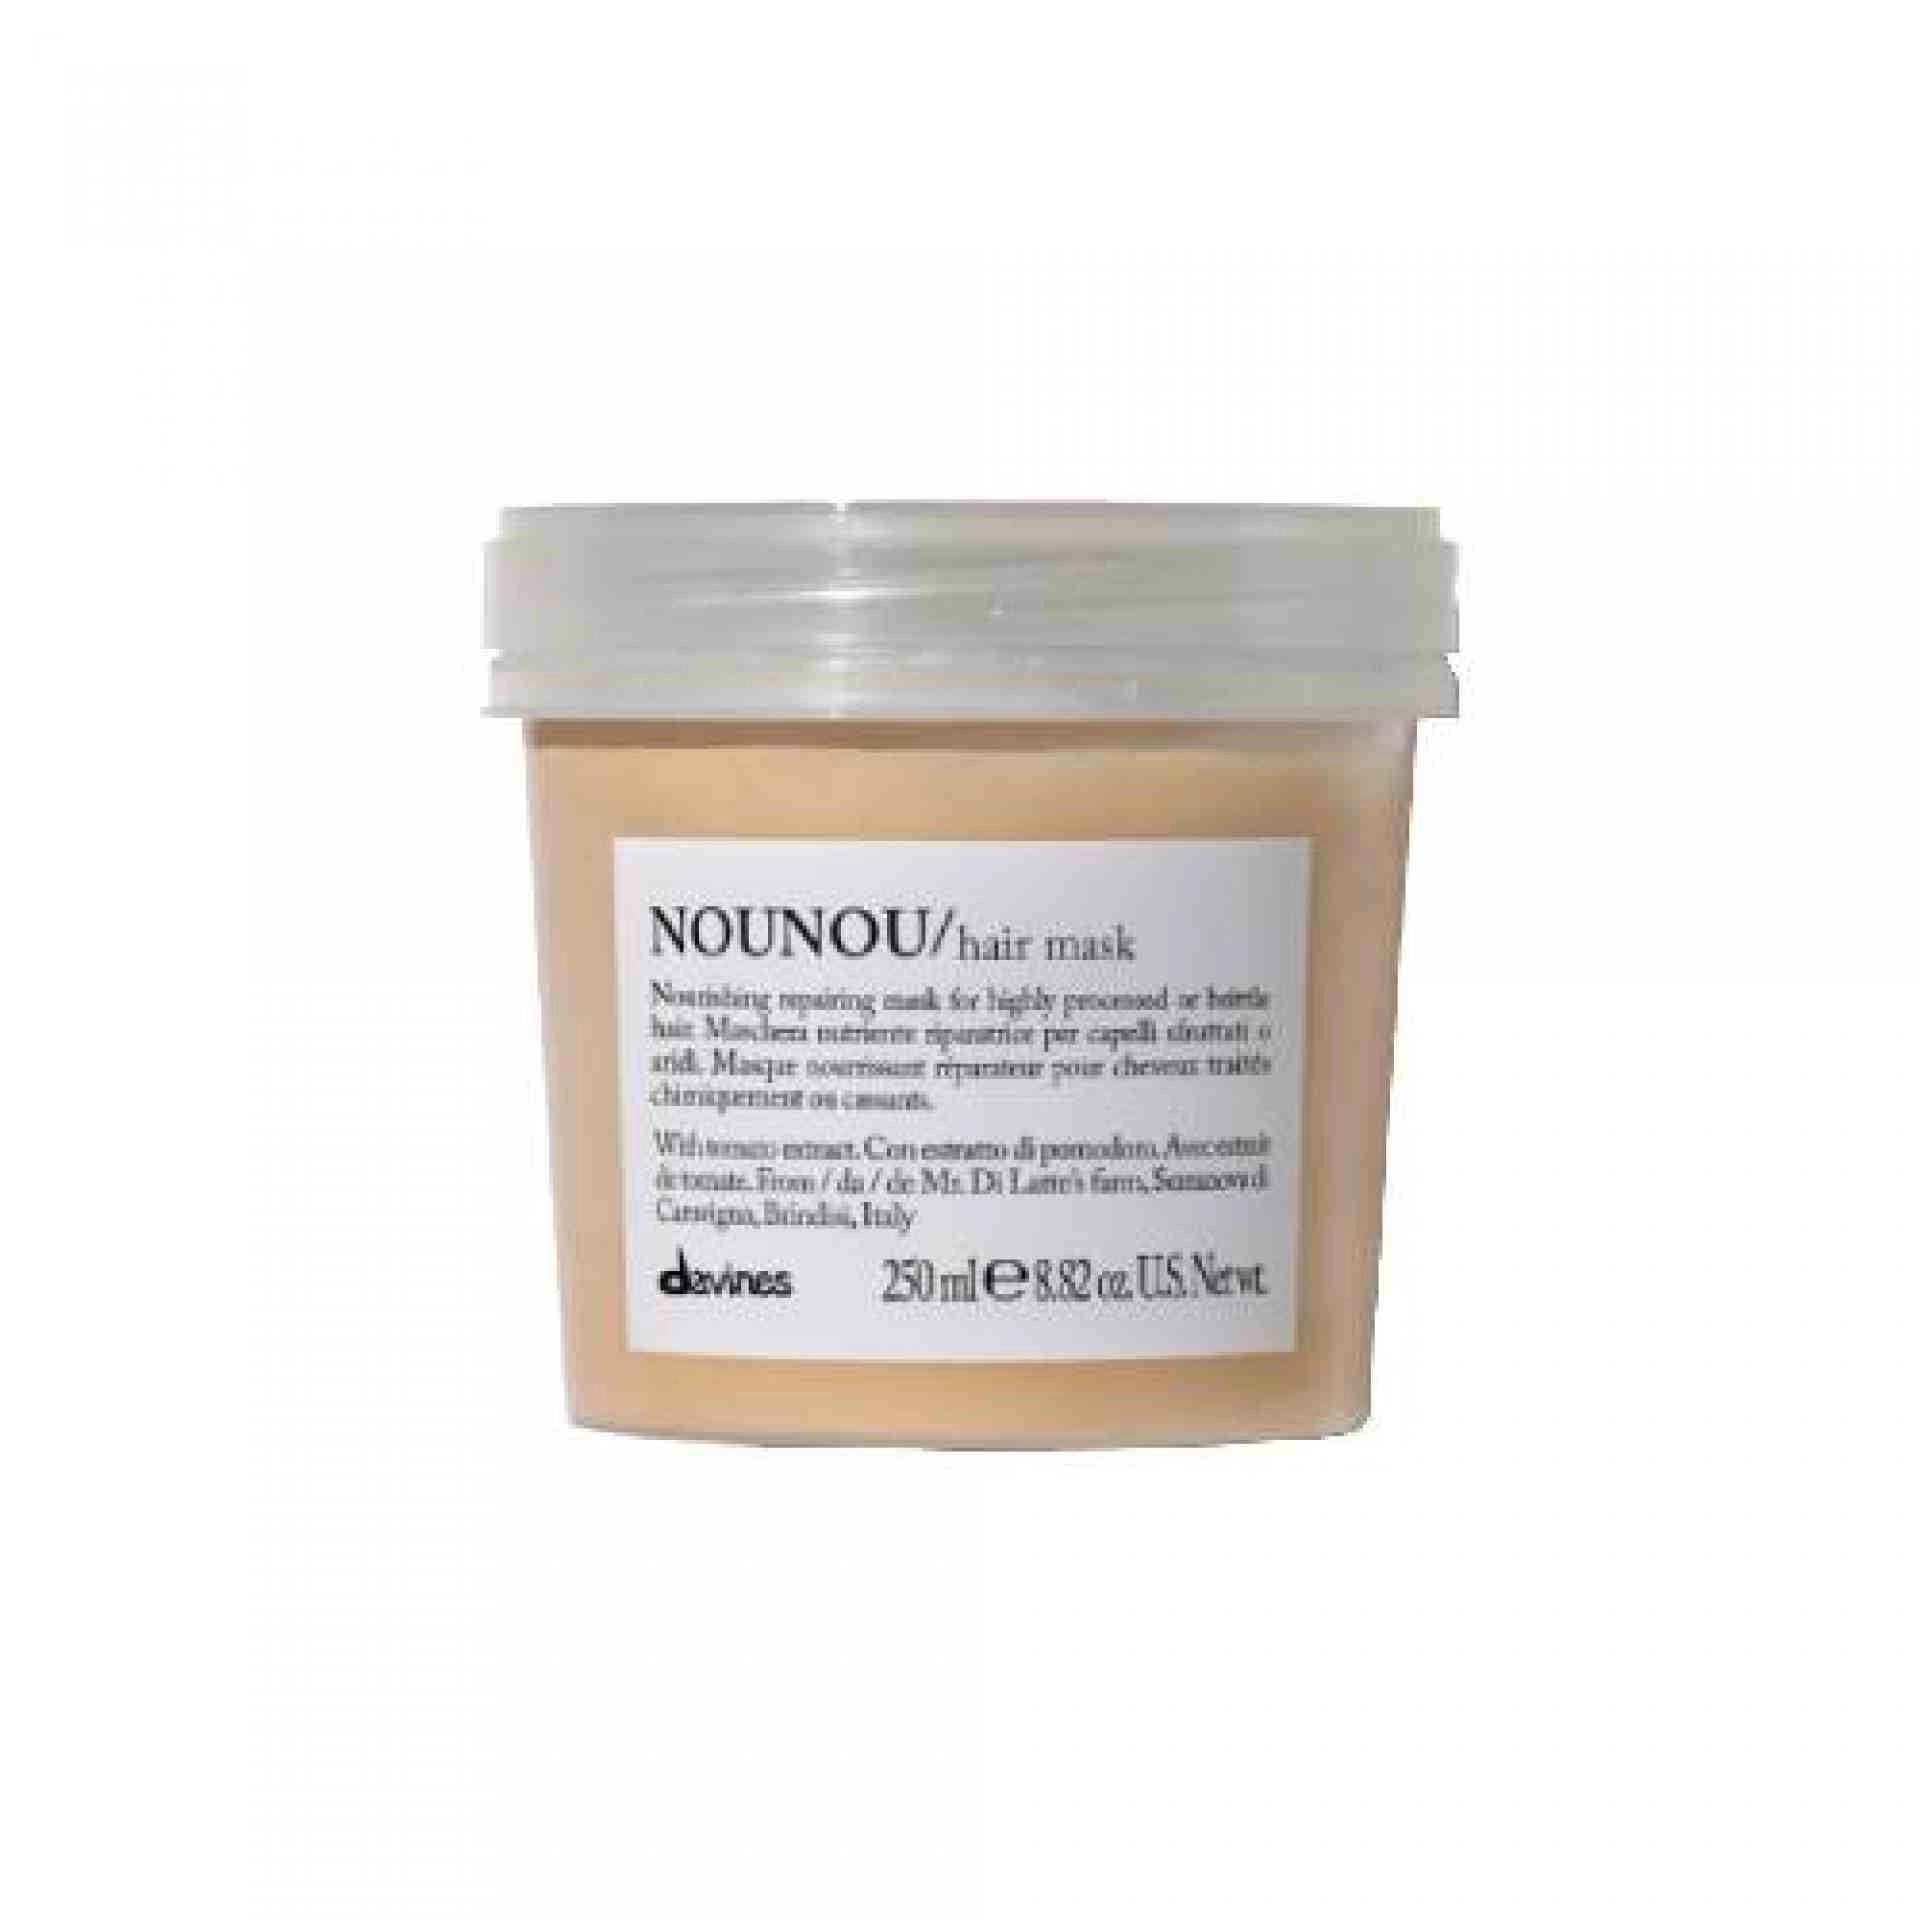 NOUNOU / Hair Mask | Mascarilla reparadora para pelo - Essential Haircare - Davines ®